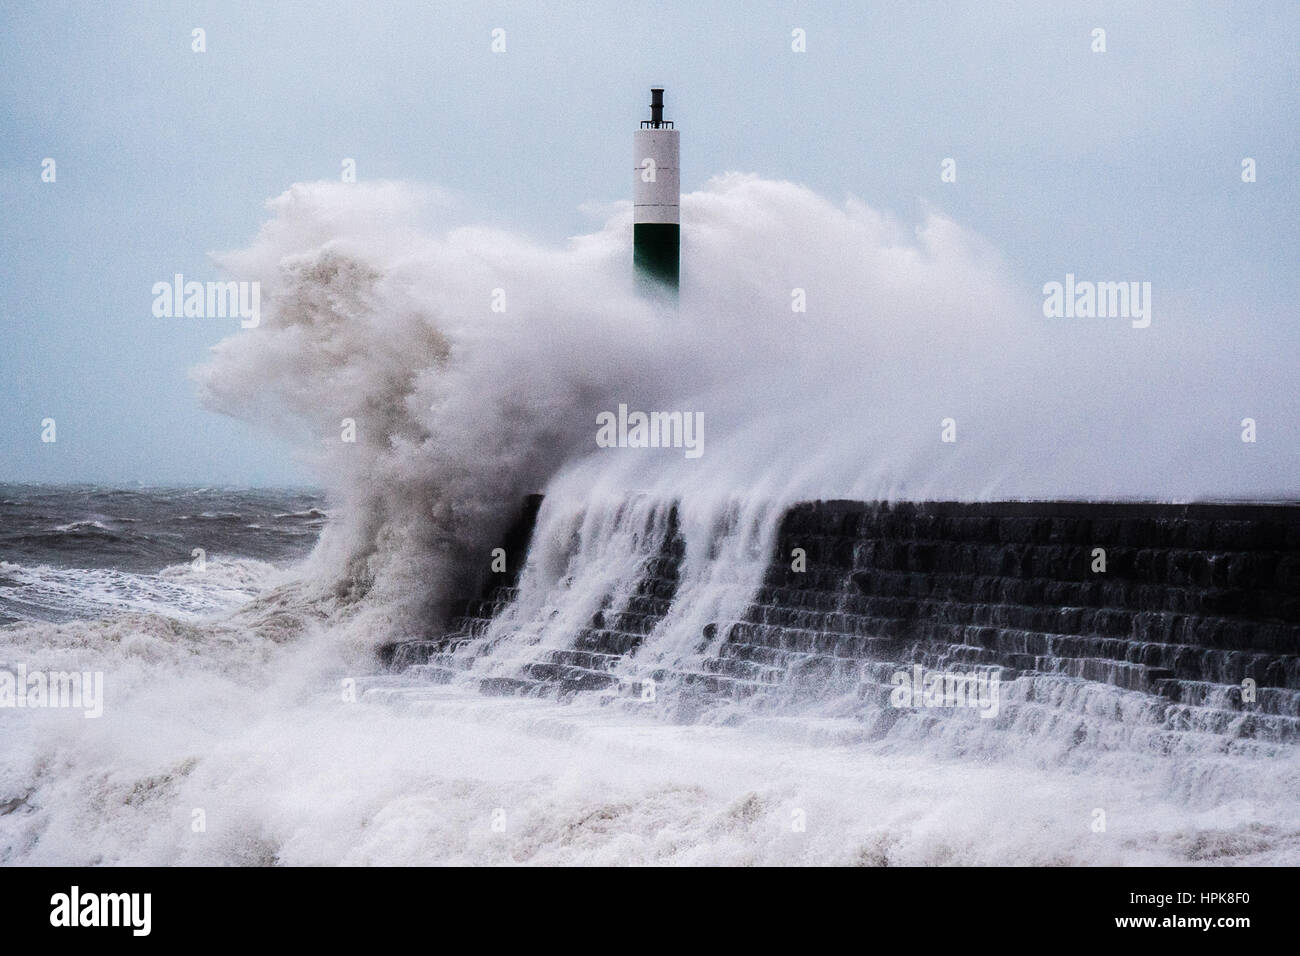 Aberystwyth, Pays de Galles, Royaume-Uni. Feb 23, 2017. Météo France : Dans les premières heures du jeudi matin, Doris tempête, le quatrième ouragan de l'hiver, frappe la ville balnéaire d'Aberystwyth, apportant en vagues gigantesques martelant contre la promenade de la mer et de défense. Violente tempête Force 11, avec des rafales de vents allant jusqu'à 90mph sont prévus dans la partie du nord du Pays de Galles et le nord-ouest de l'Angleterre, avec le risque de dommages à la propriété et une grave perturbation des déplacements. La tempête a été classé comme 'bombe météorologique" Cyclogenisis (explosifs) par le Met Office. Crédit photo : Keith morris/Alamy Live News Banque D'Images